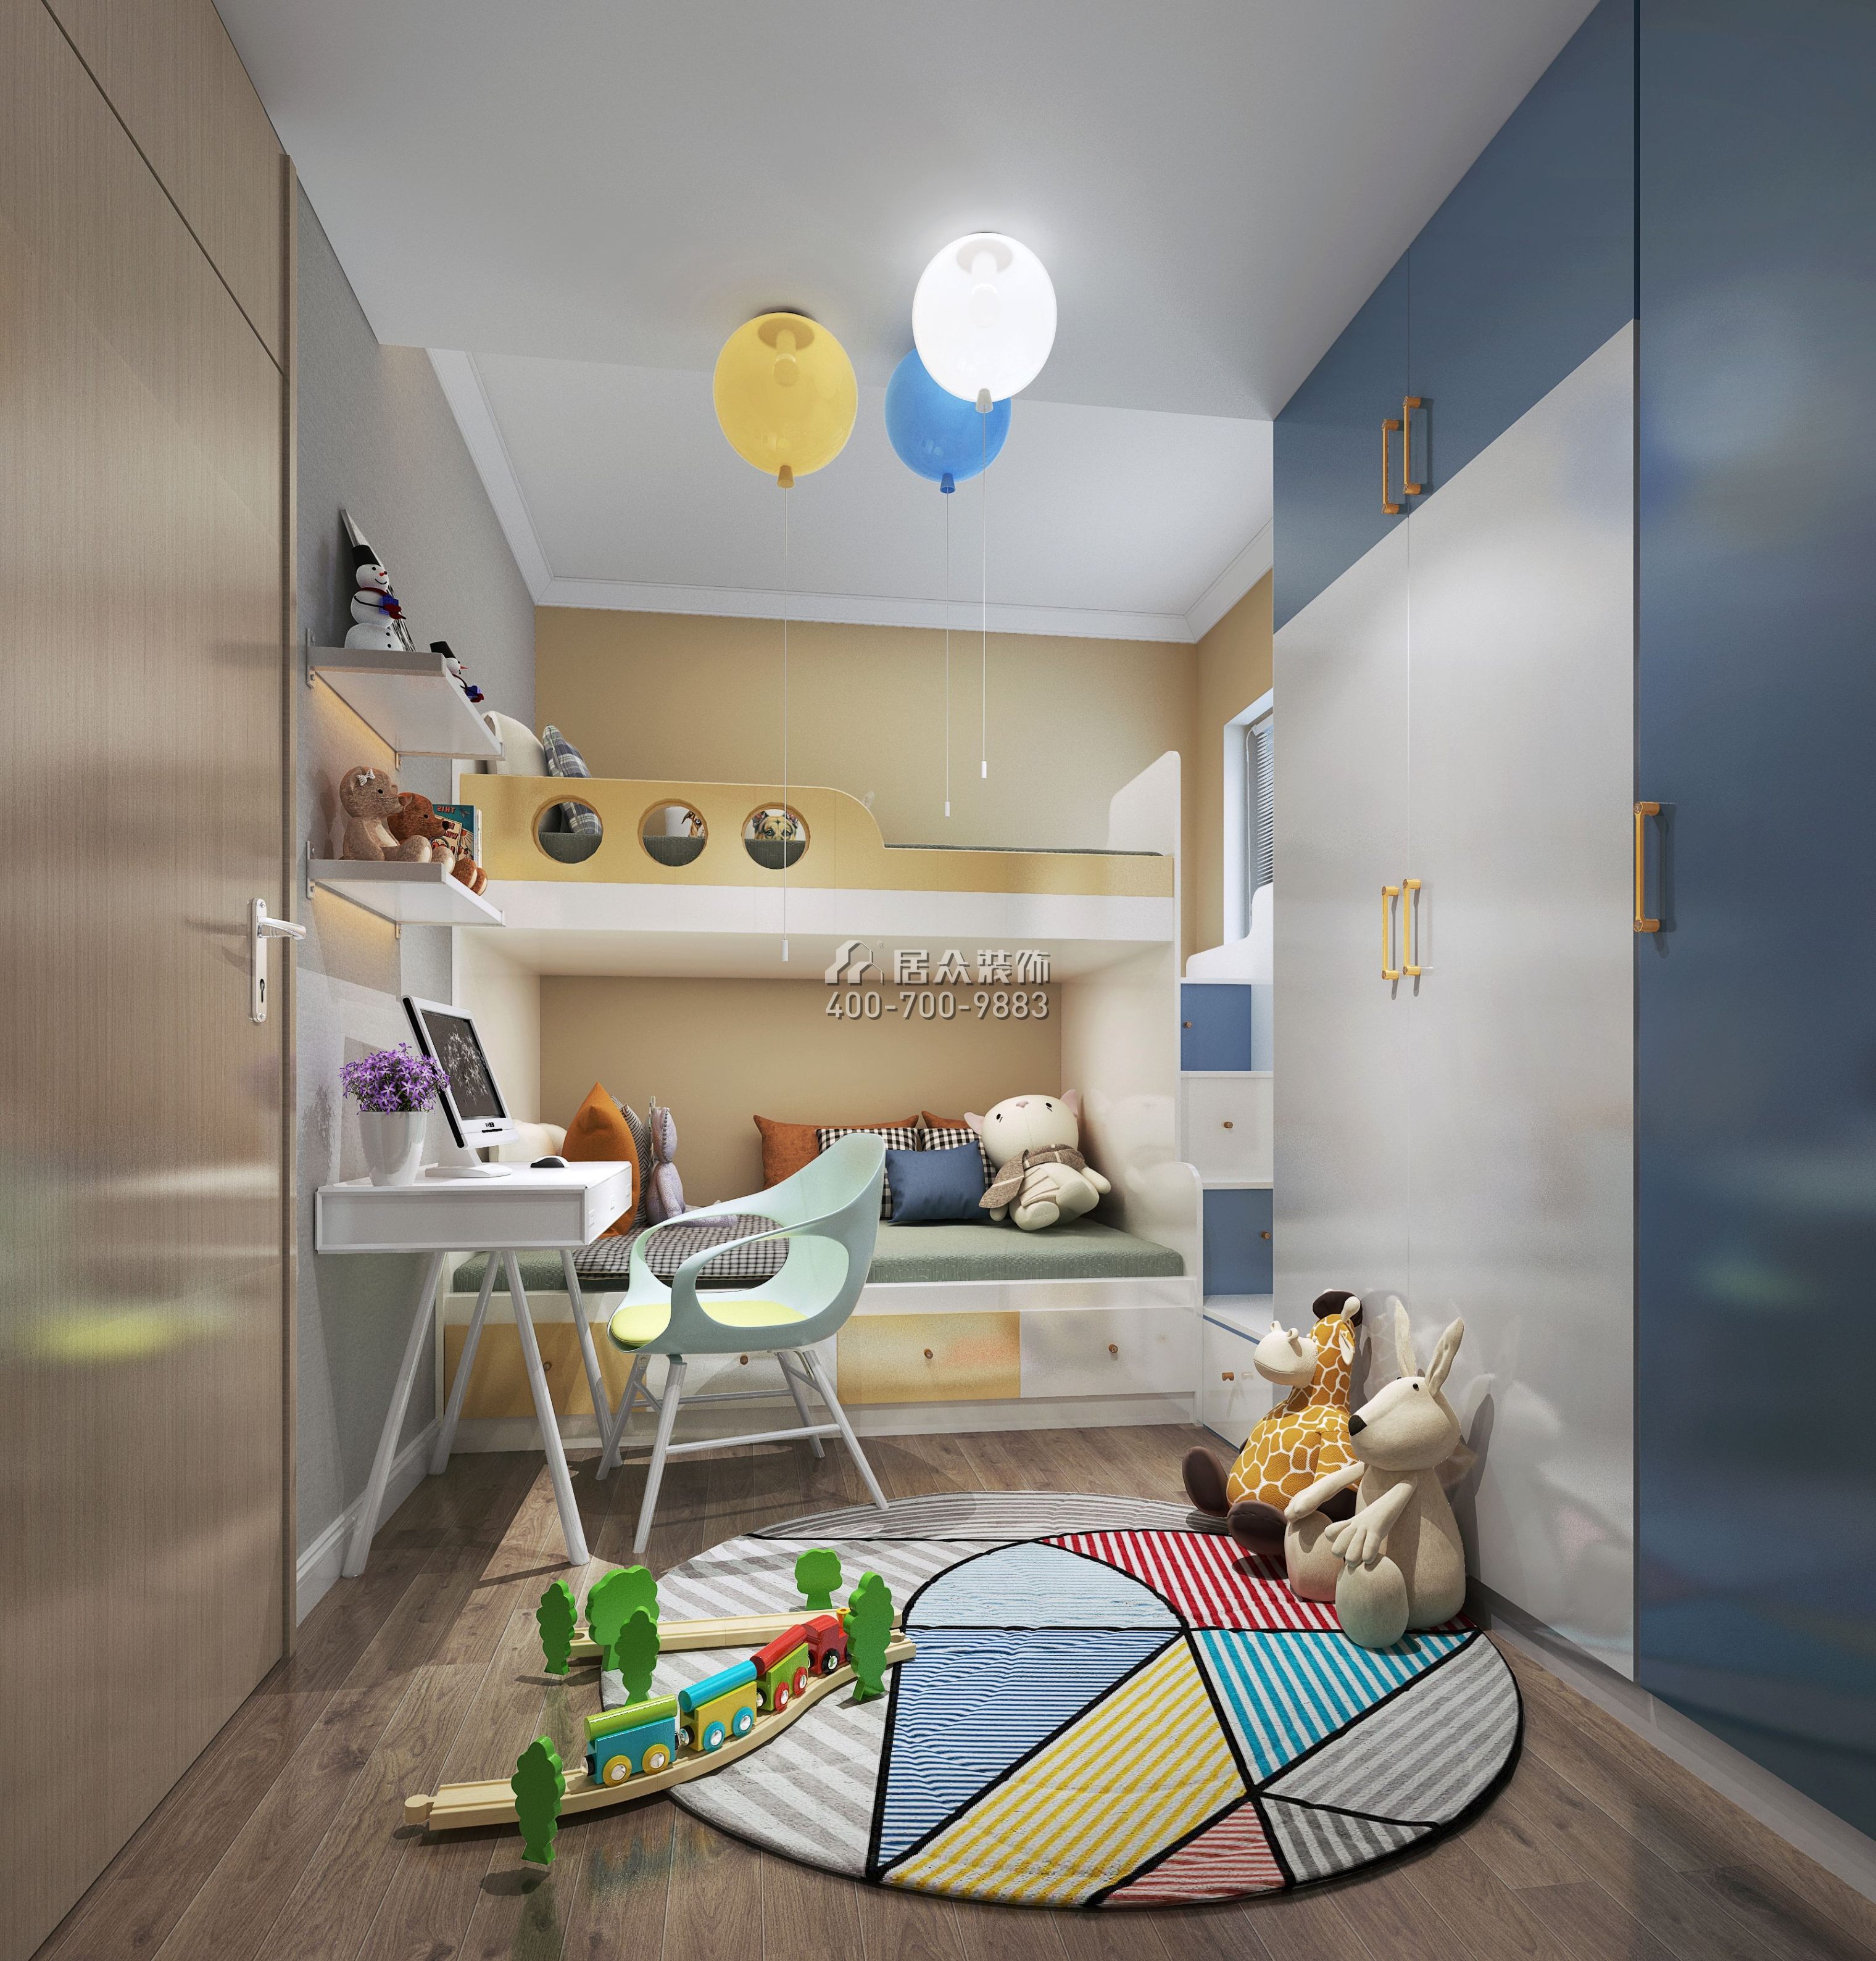 梧桐花园98平方米现代简约风格平层户型儿童房装修效果图